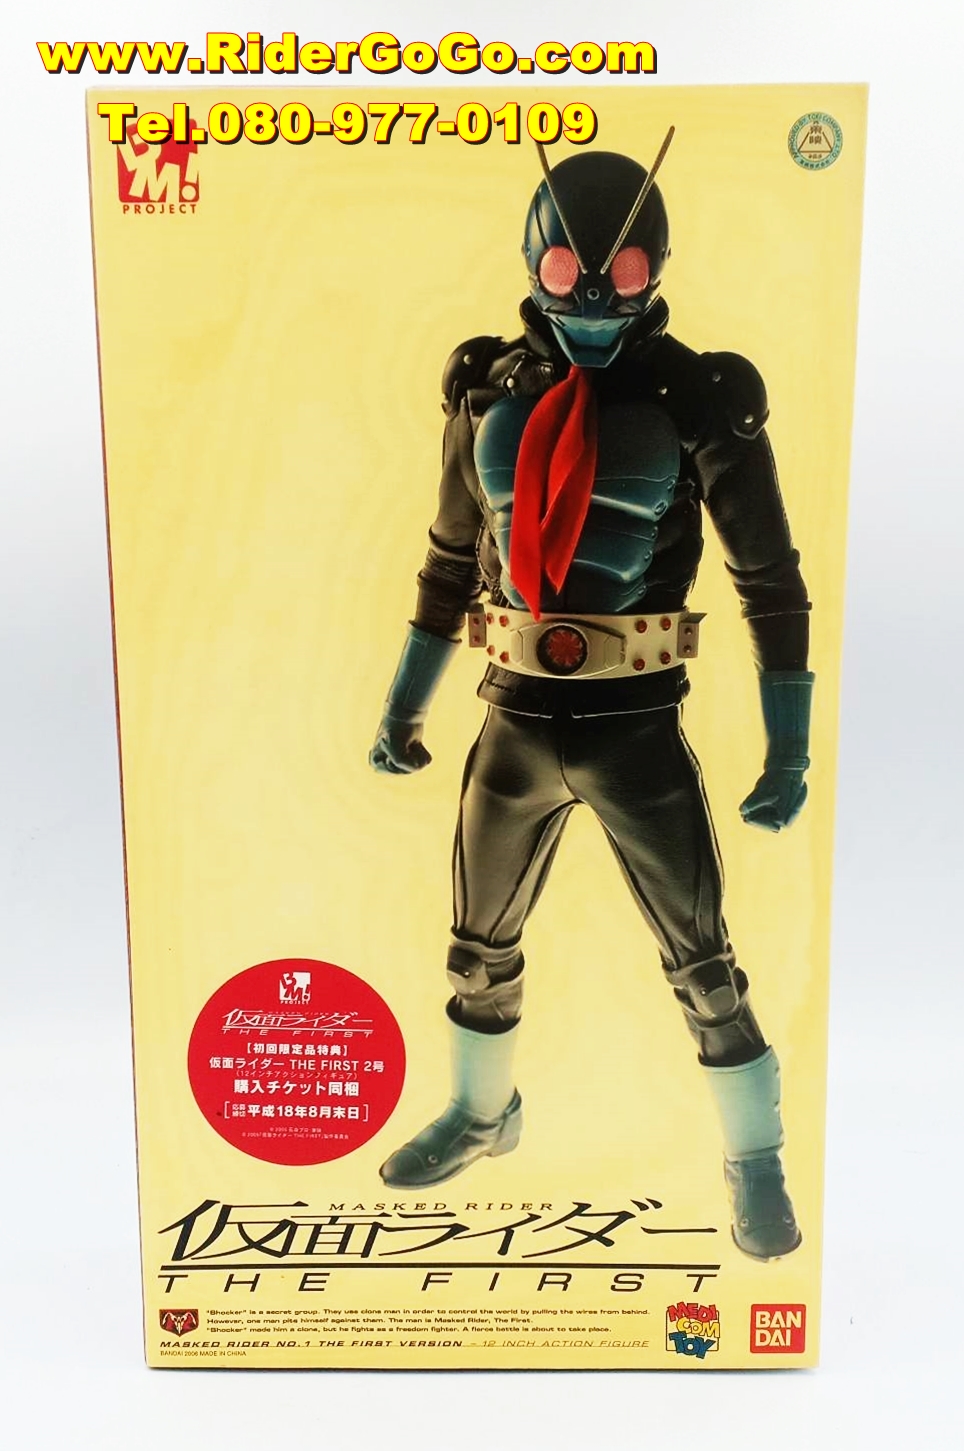 โมเดลชุดผ้ามาสค์ไรเดอร์หมายเลข1 หรือมาสค์ไรเดอร์วี1 Medicom Toy Project BM Masked Rider No.1 The First Version ของแท้จากประเทศญี่ปุ่น รูปที่ 1